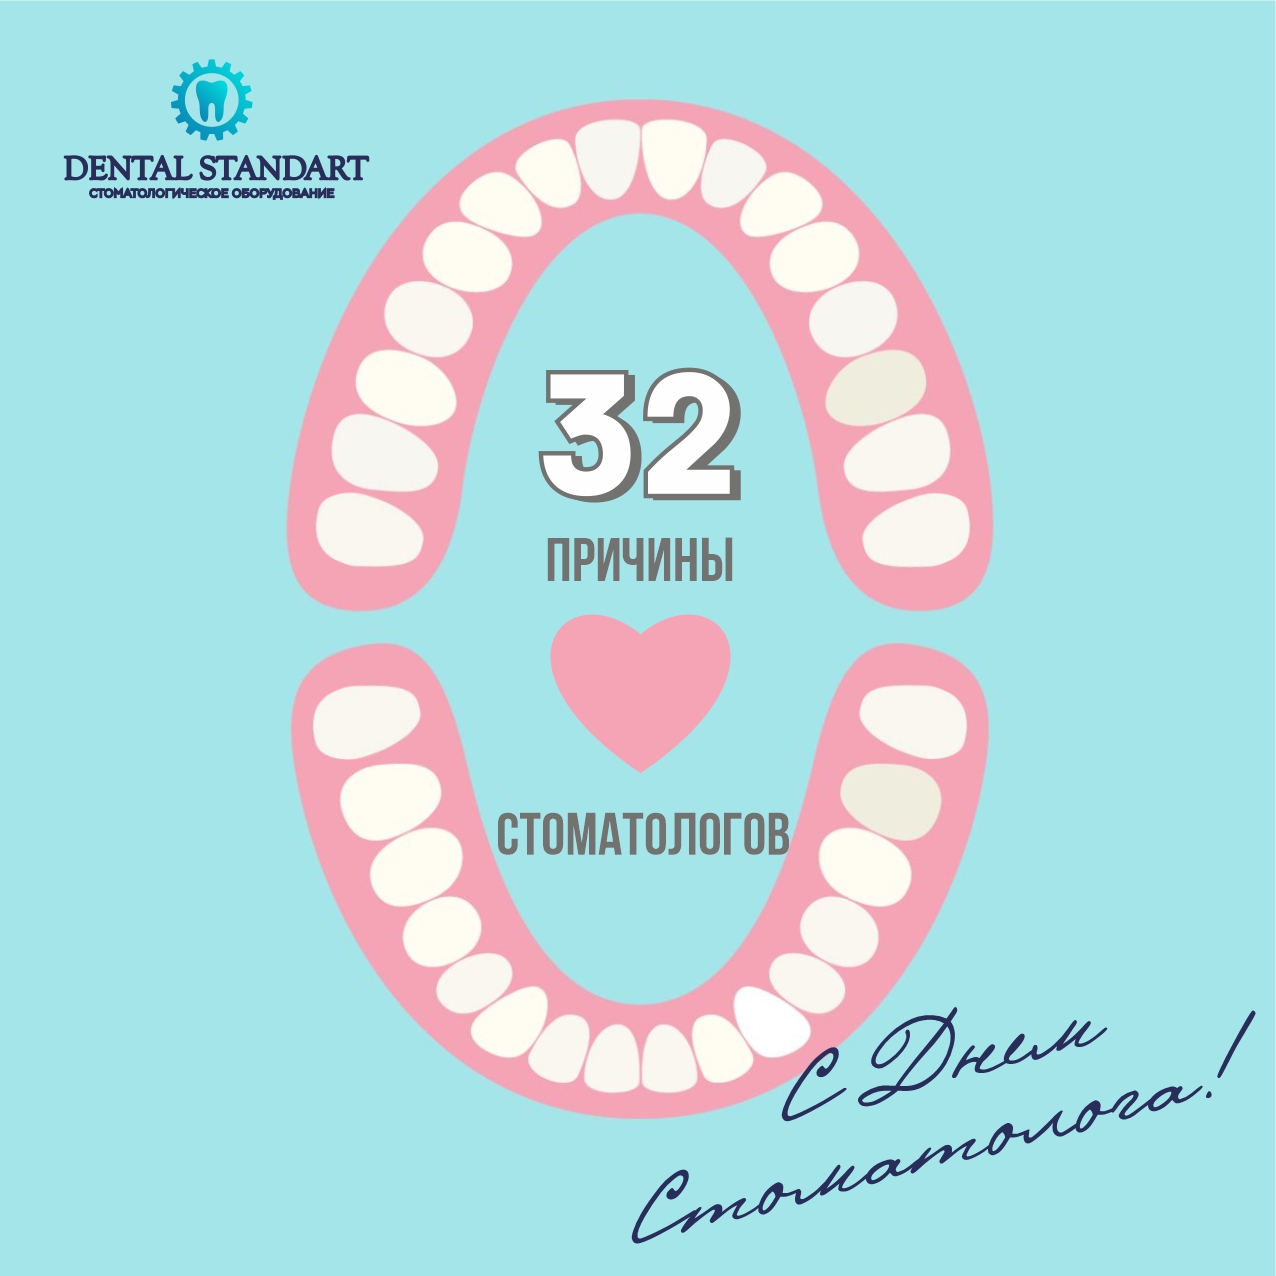 🦷 Дорогие стоматологи, «Дентал Стандарт» поздравляет вас с профессиональным днем!